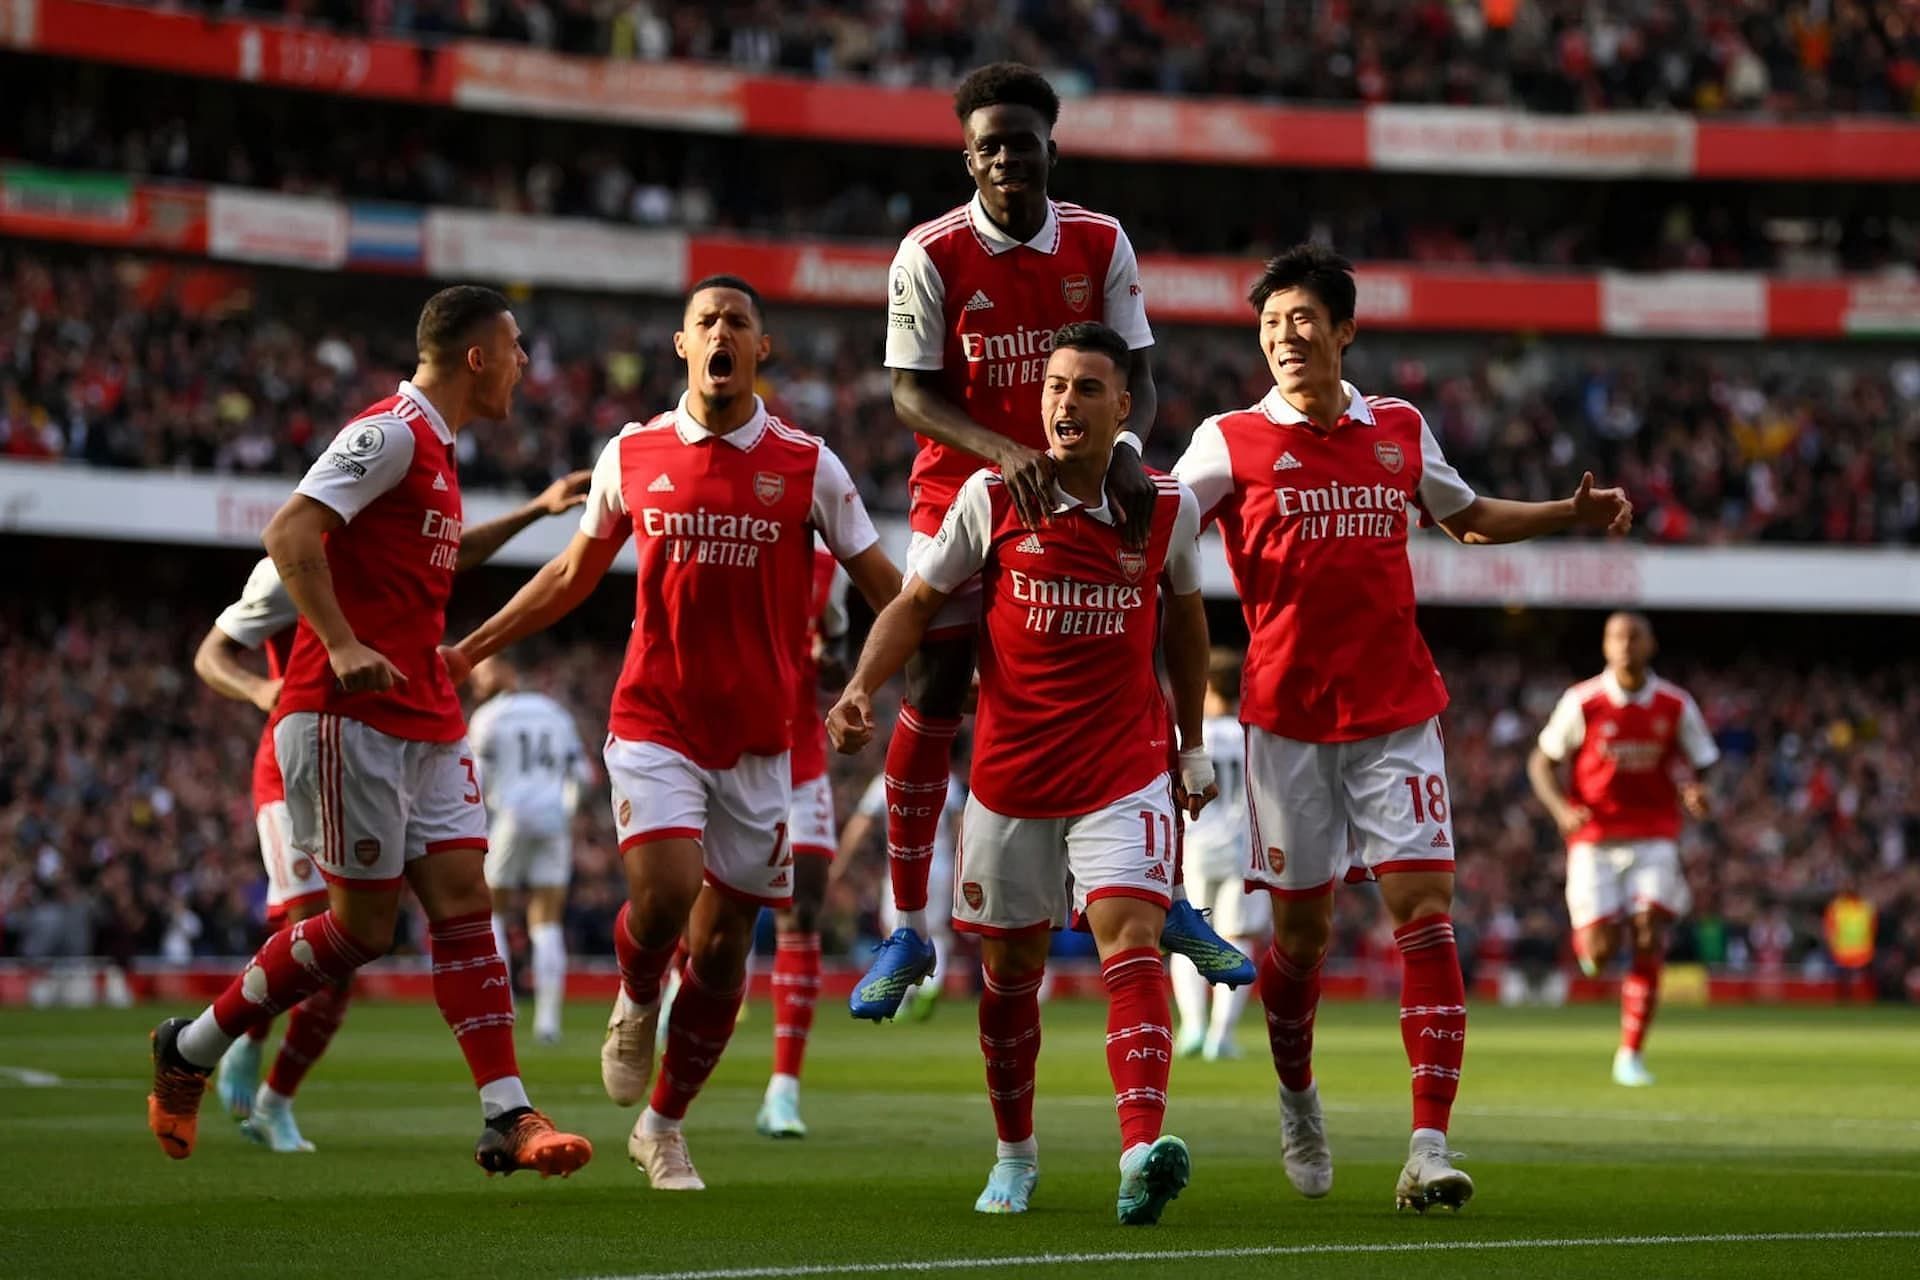 Calificaciones previstas de jugadores del EA FC 24 Arsenal - juegos.news